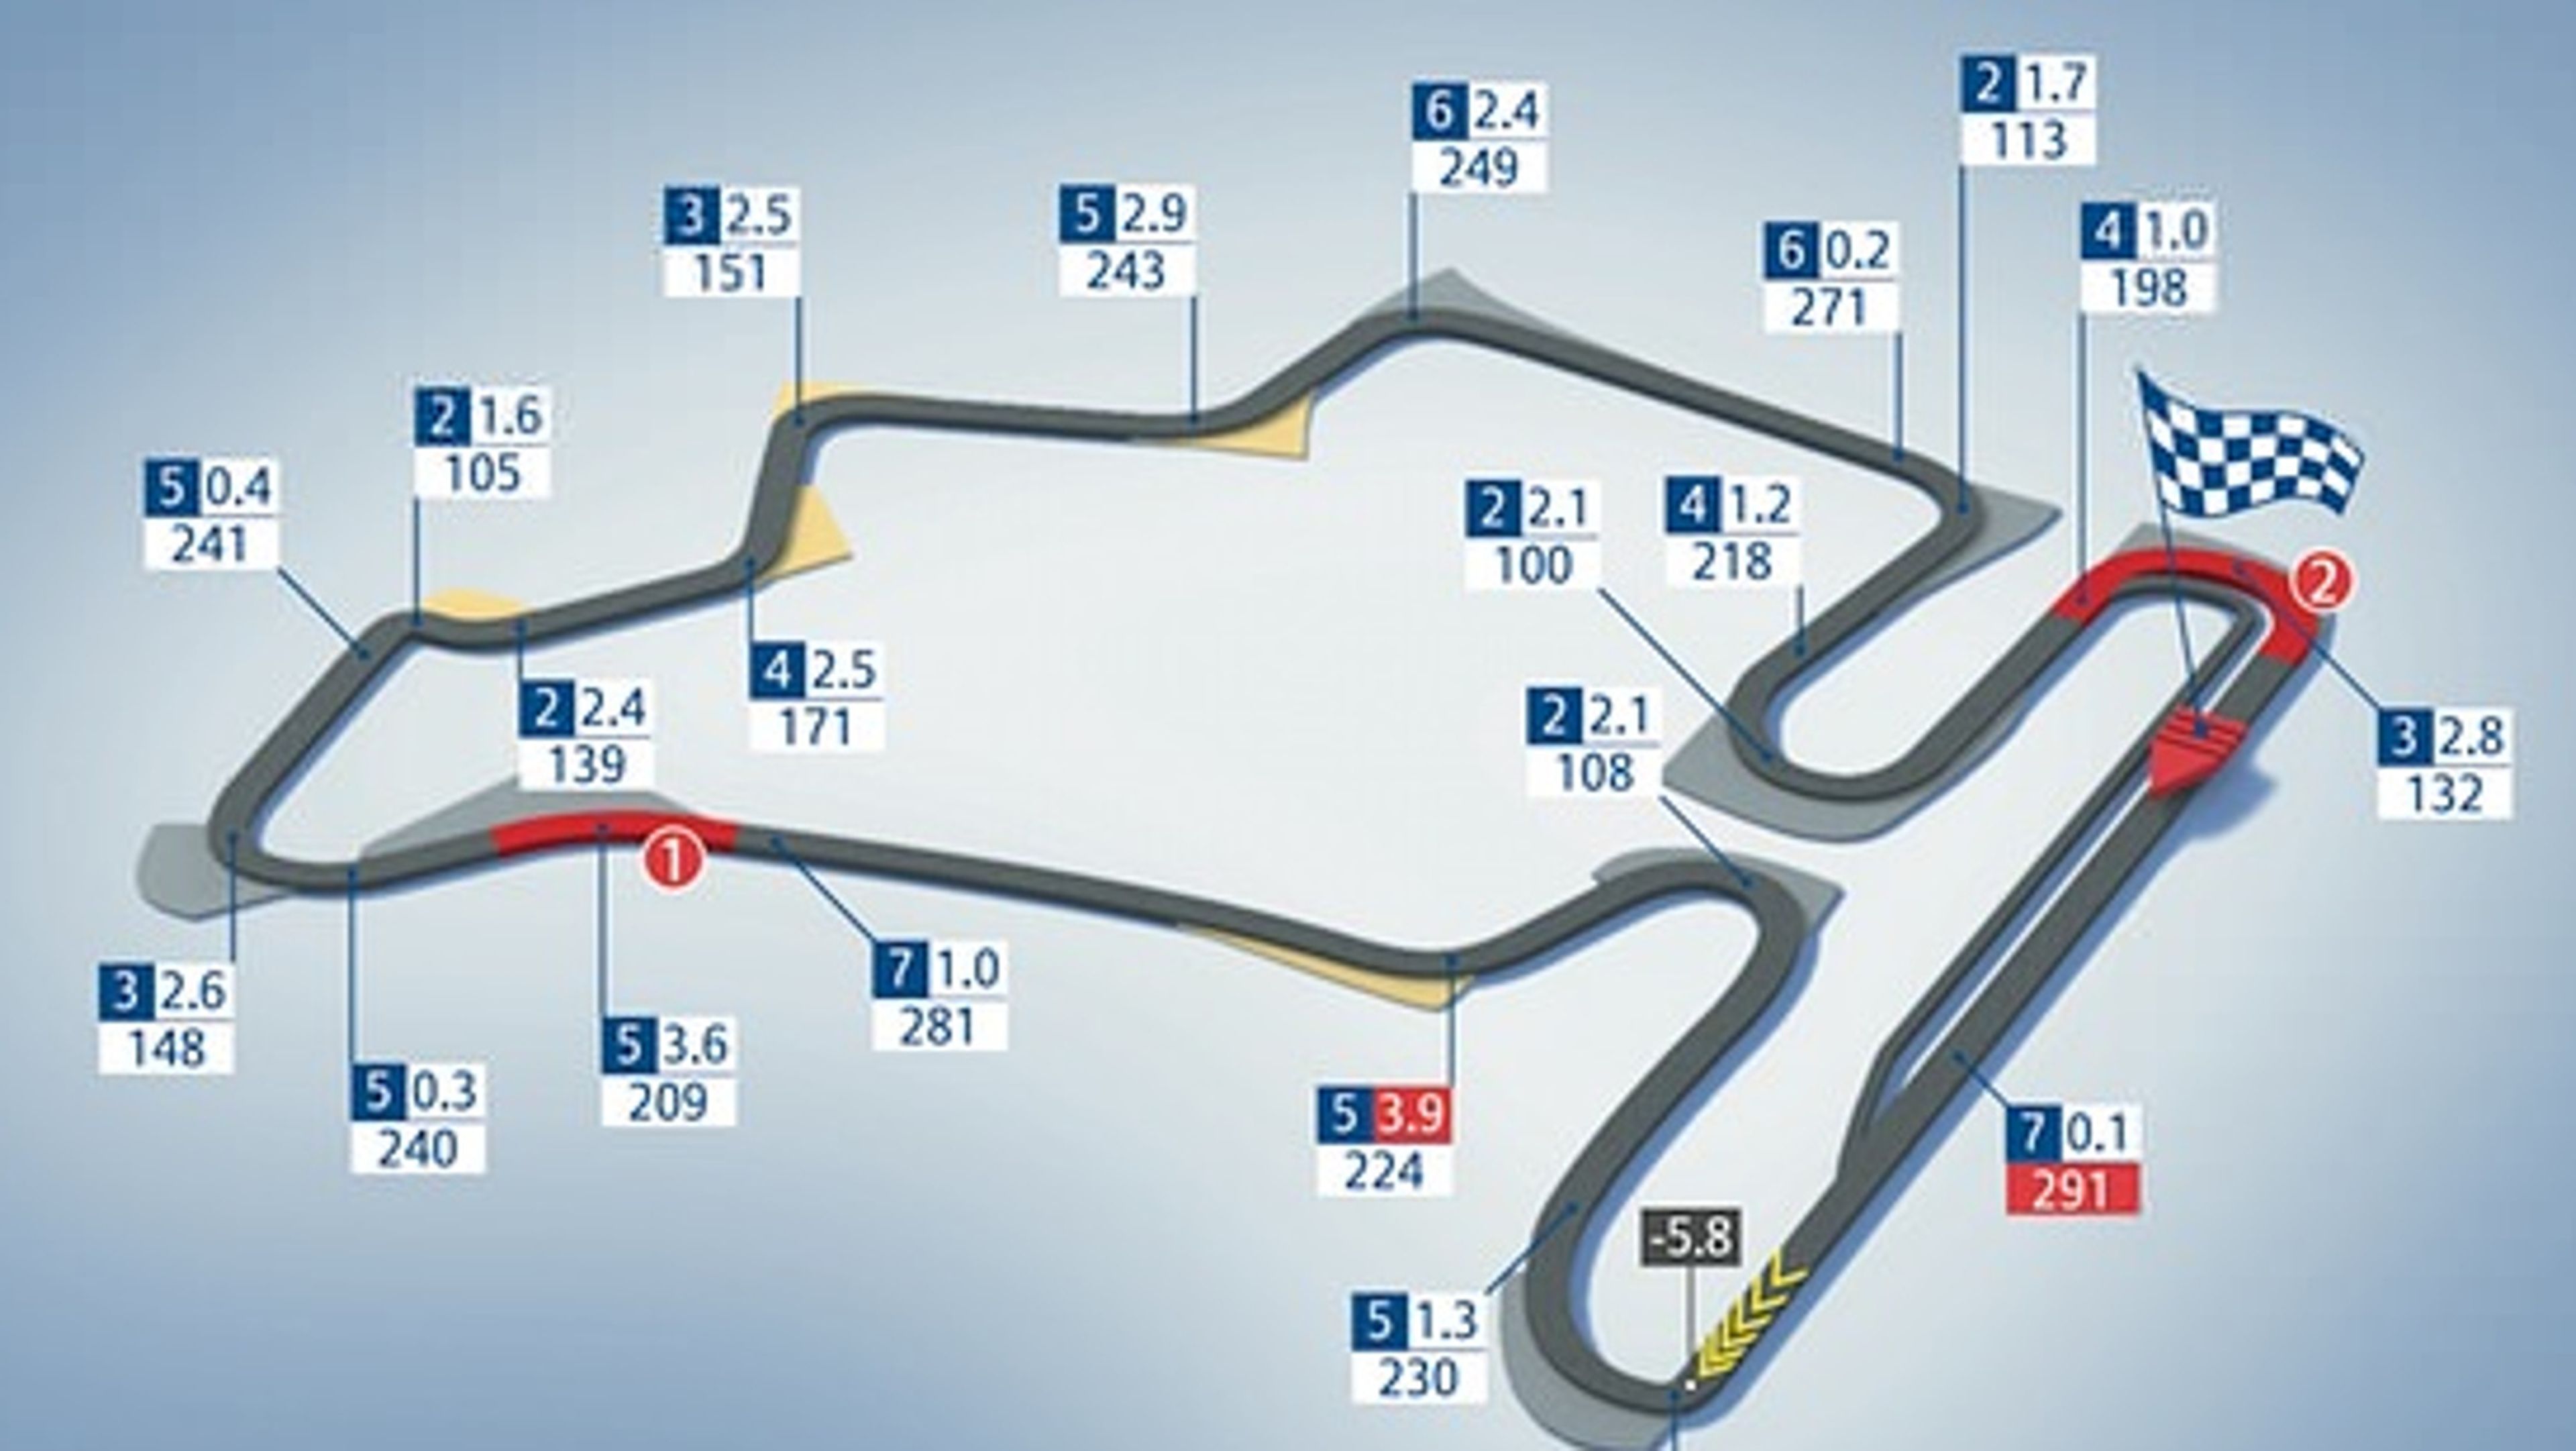 Circuito de Hungaroring F1